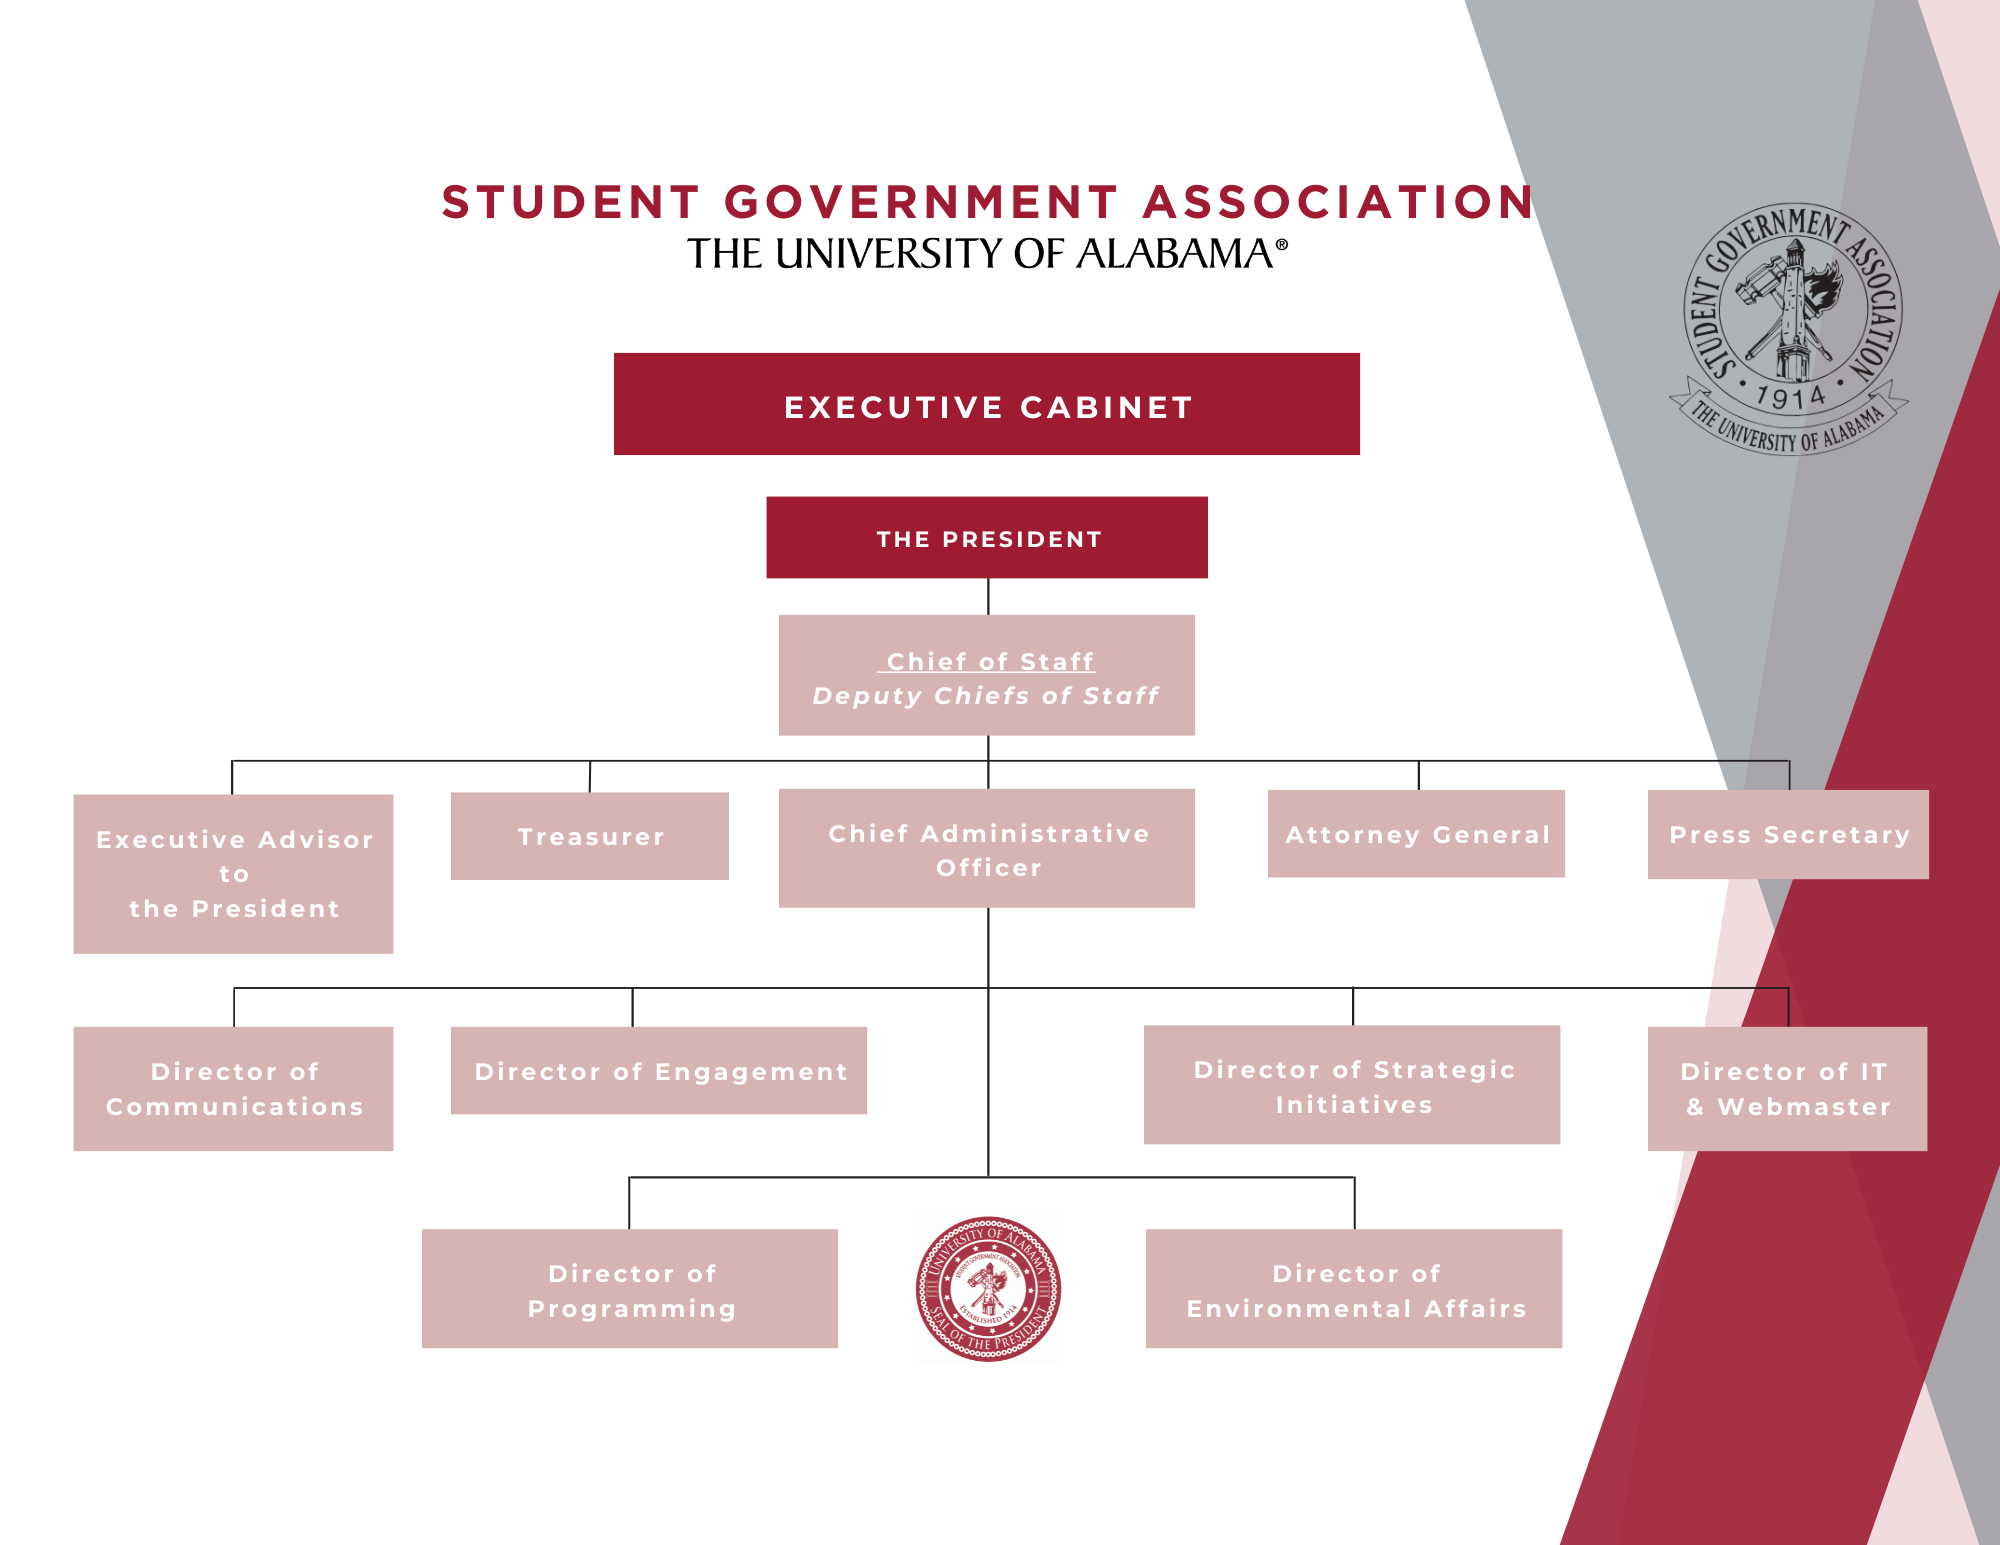 University of Alabama SGA Structure Image